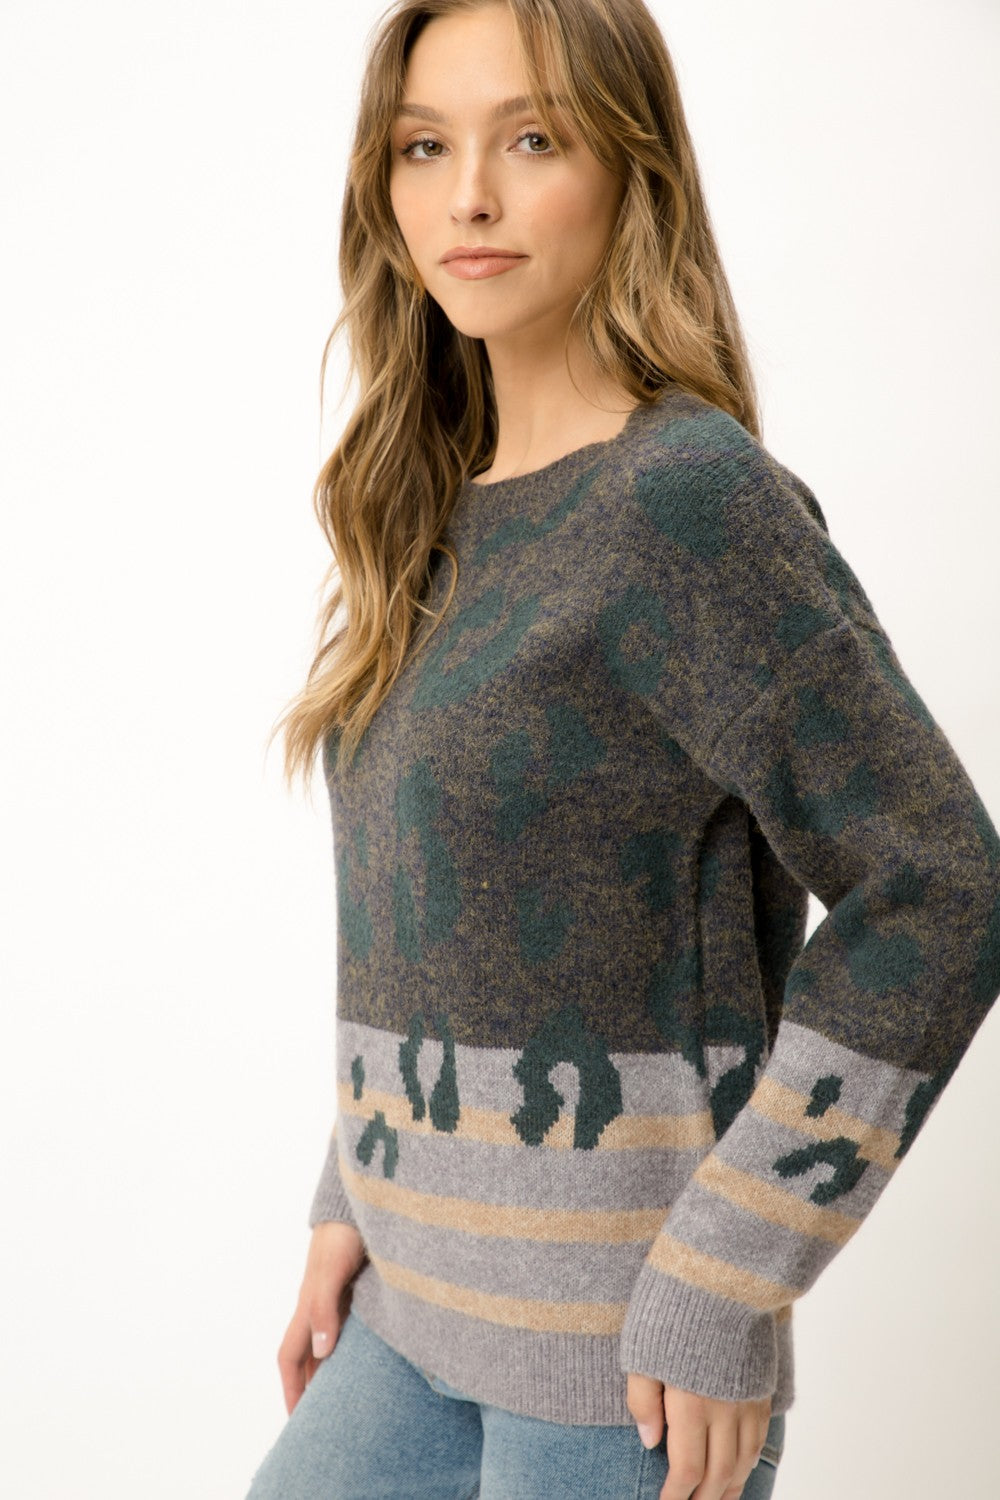 Leopard Stripe Sweater